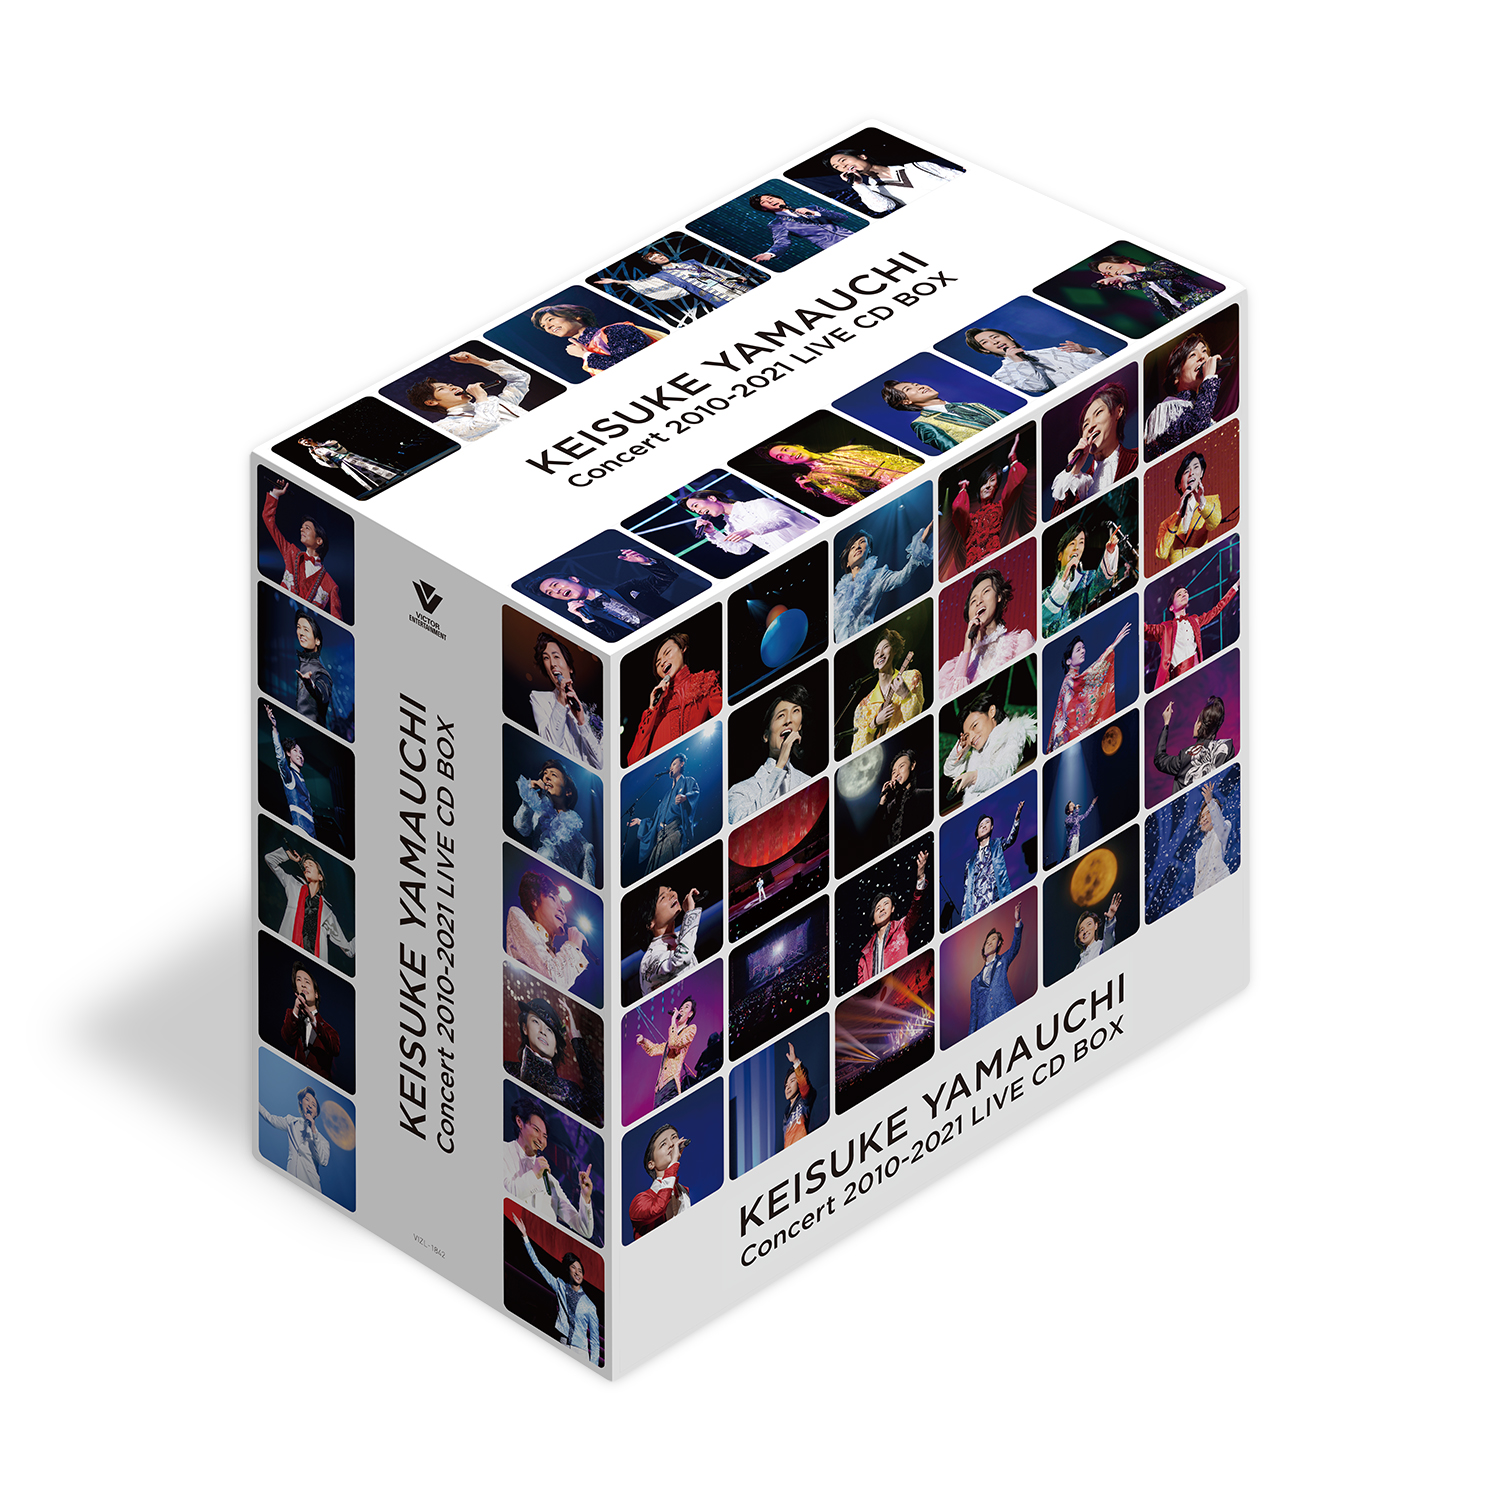 『山内惠介コンサート 2010-2021 LIVE CD BOX』